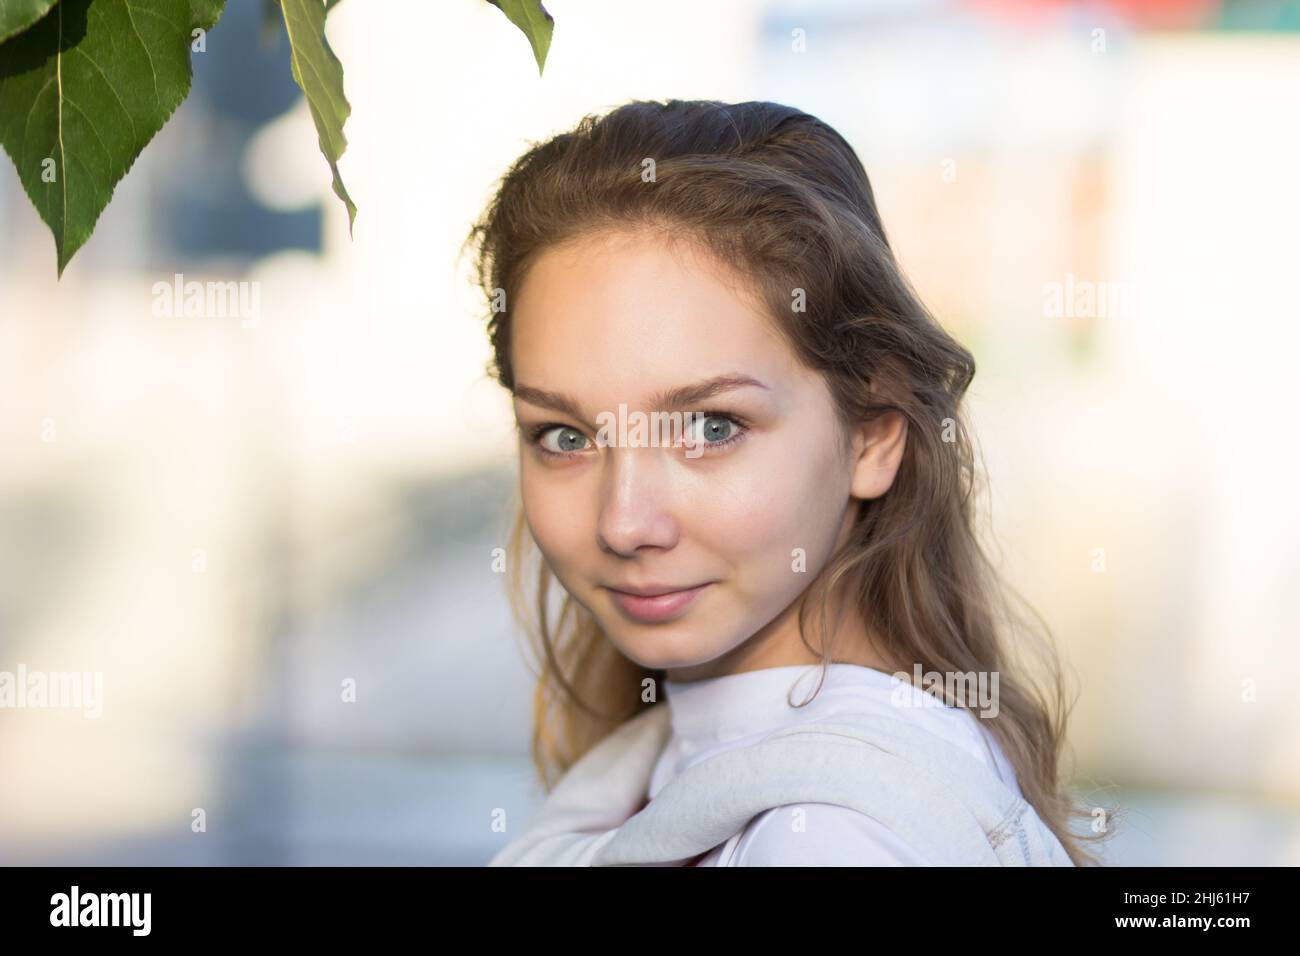 Porträt einer jungen kaukasischen Frau im Sommerpark, die mit prall gefüllten Augen auf die Kamera schaut Stockfoto